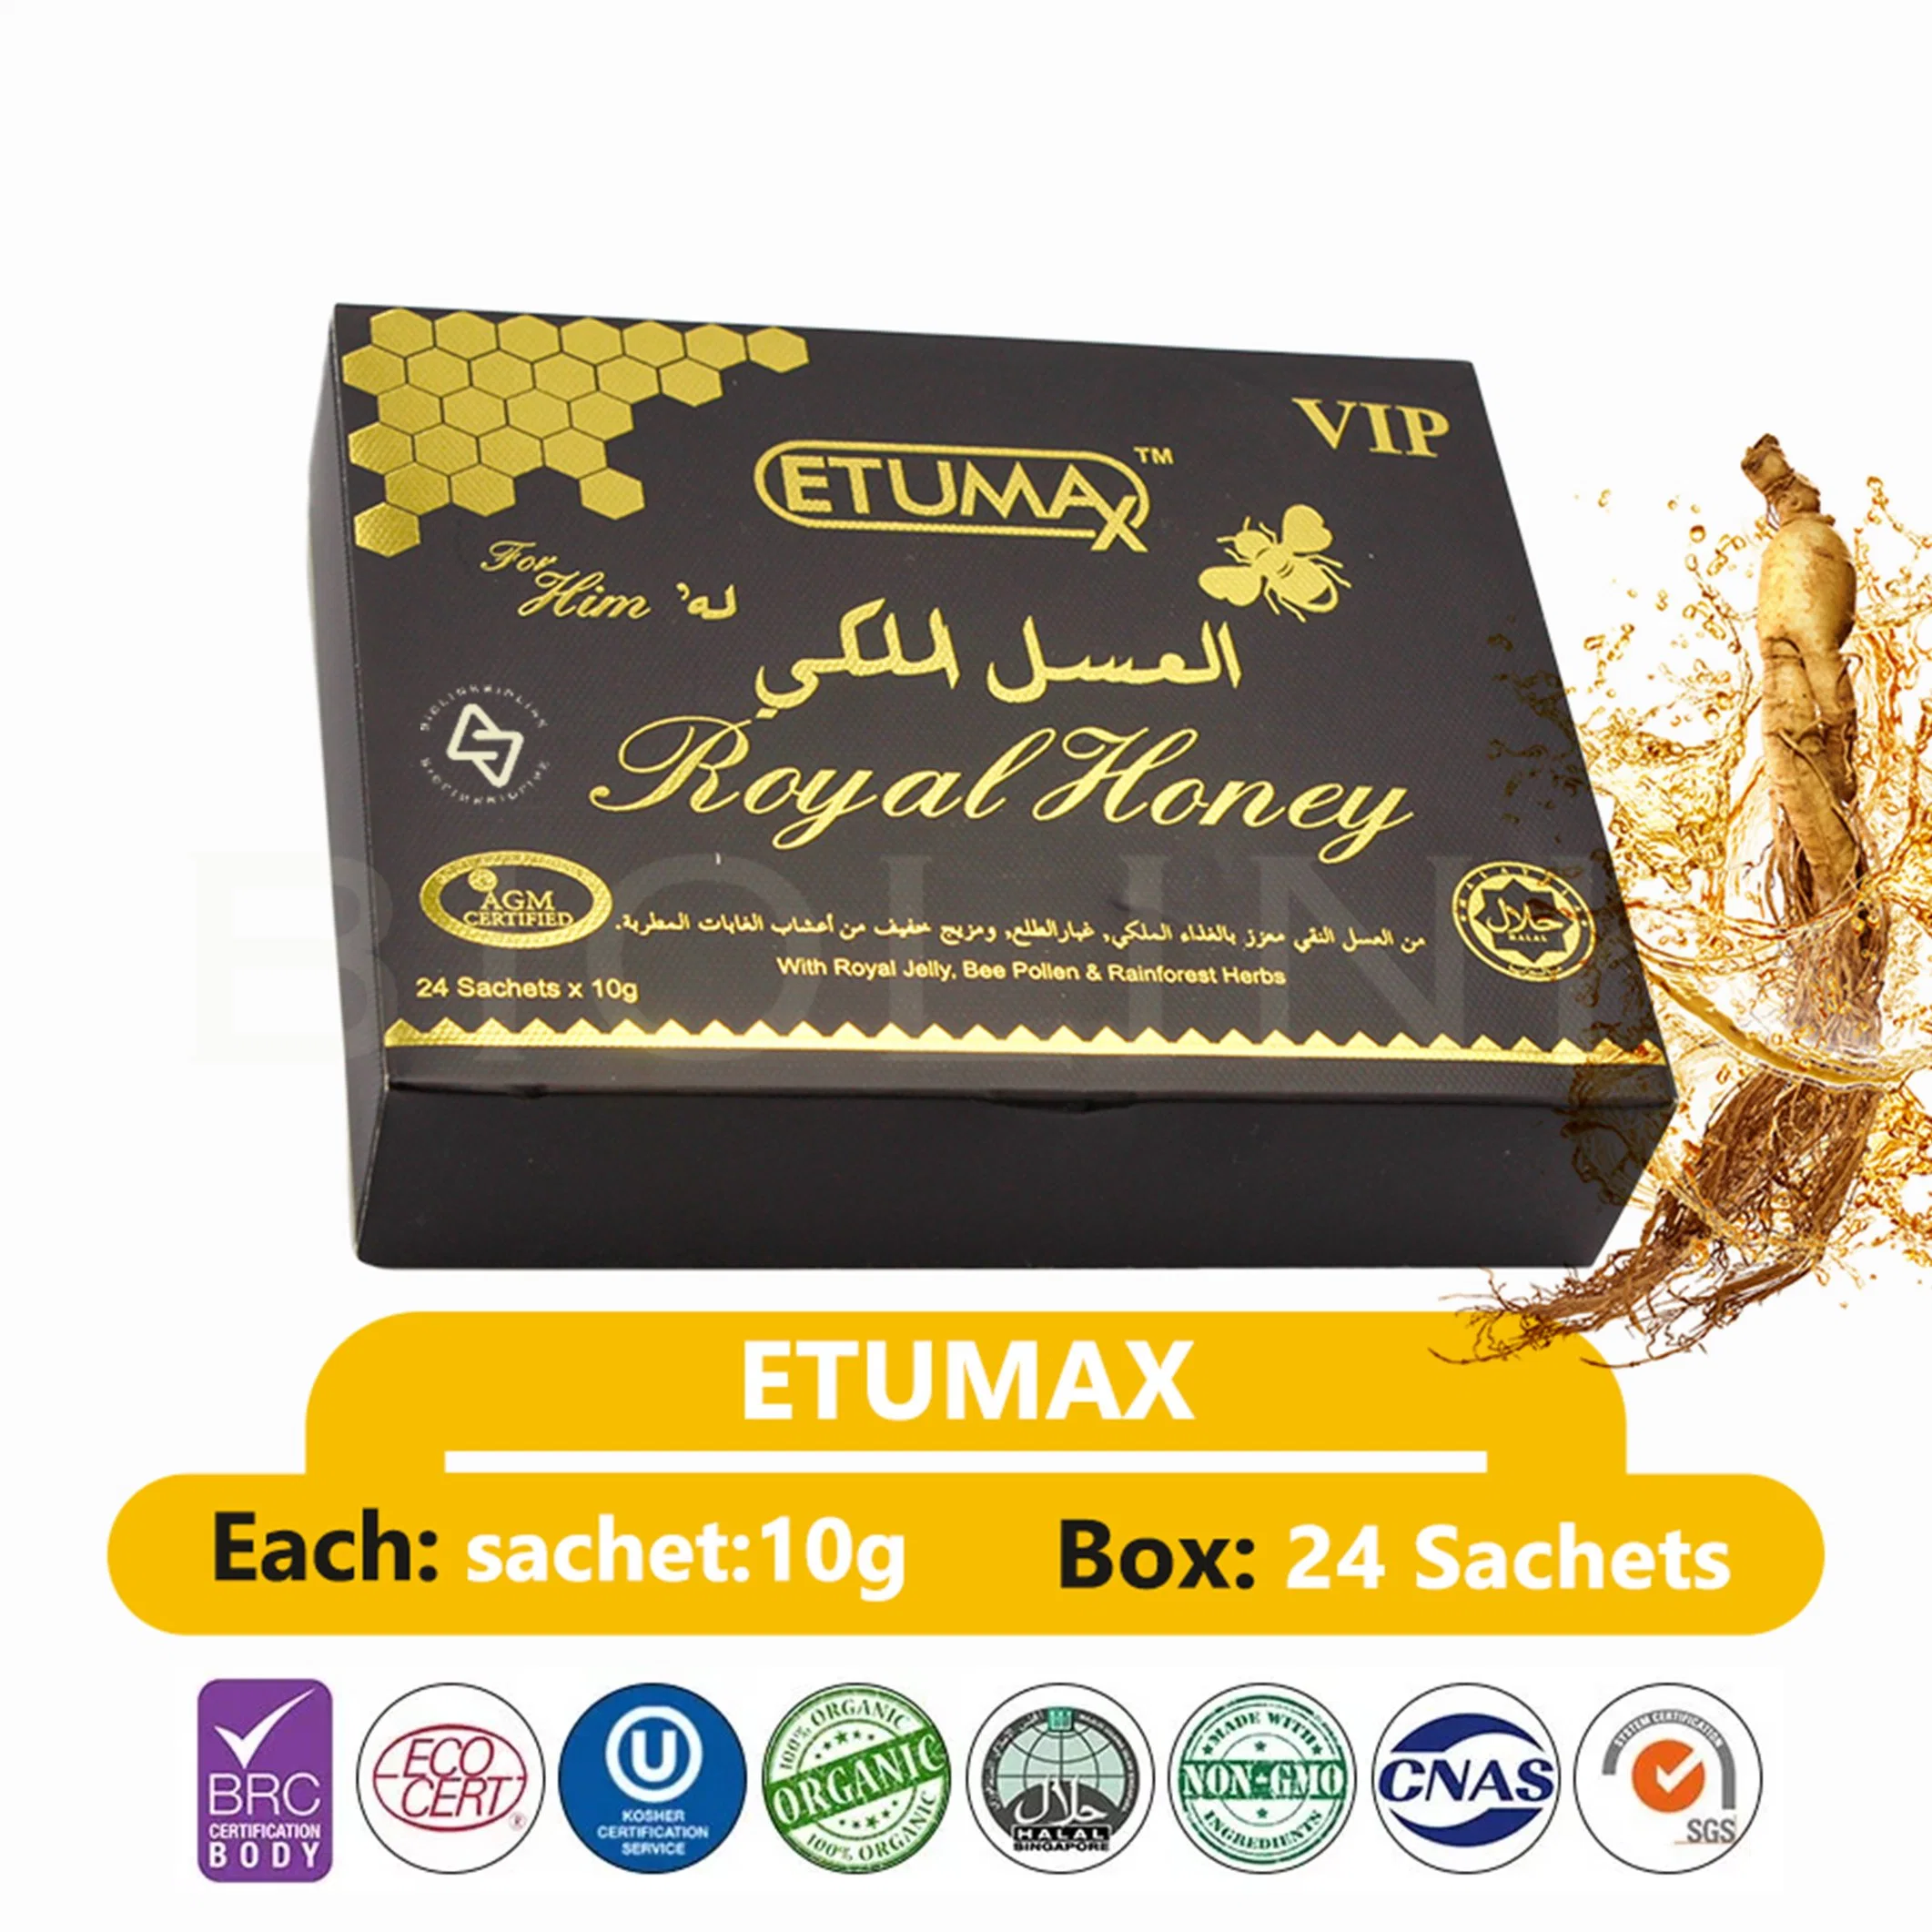 Zucker Alternative Secret Miracle Honey USA Großhandel Royal Honey 12 Sachets-15g